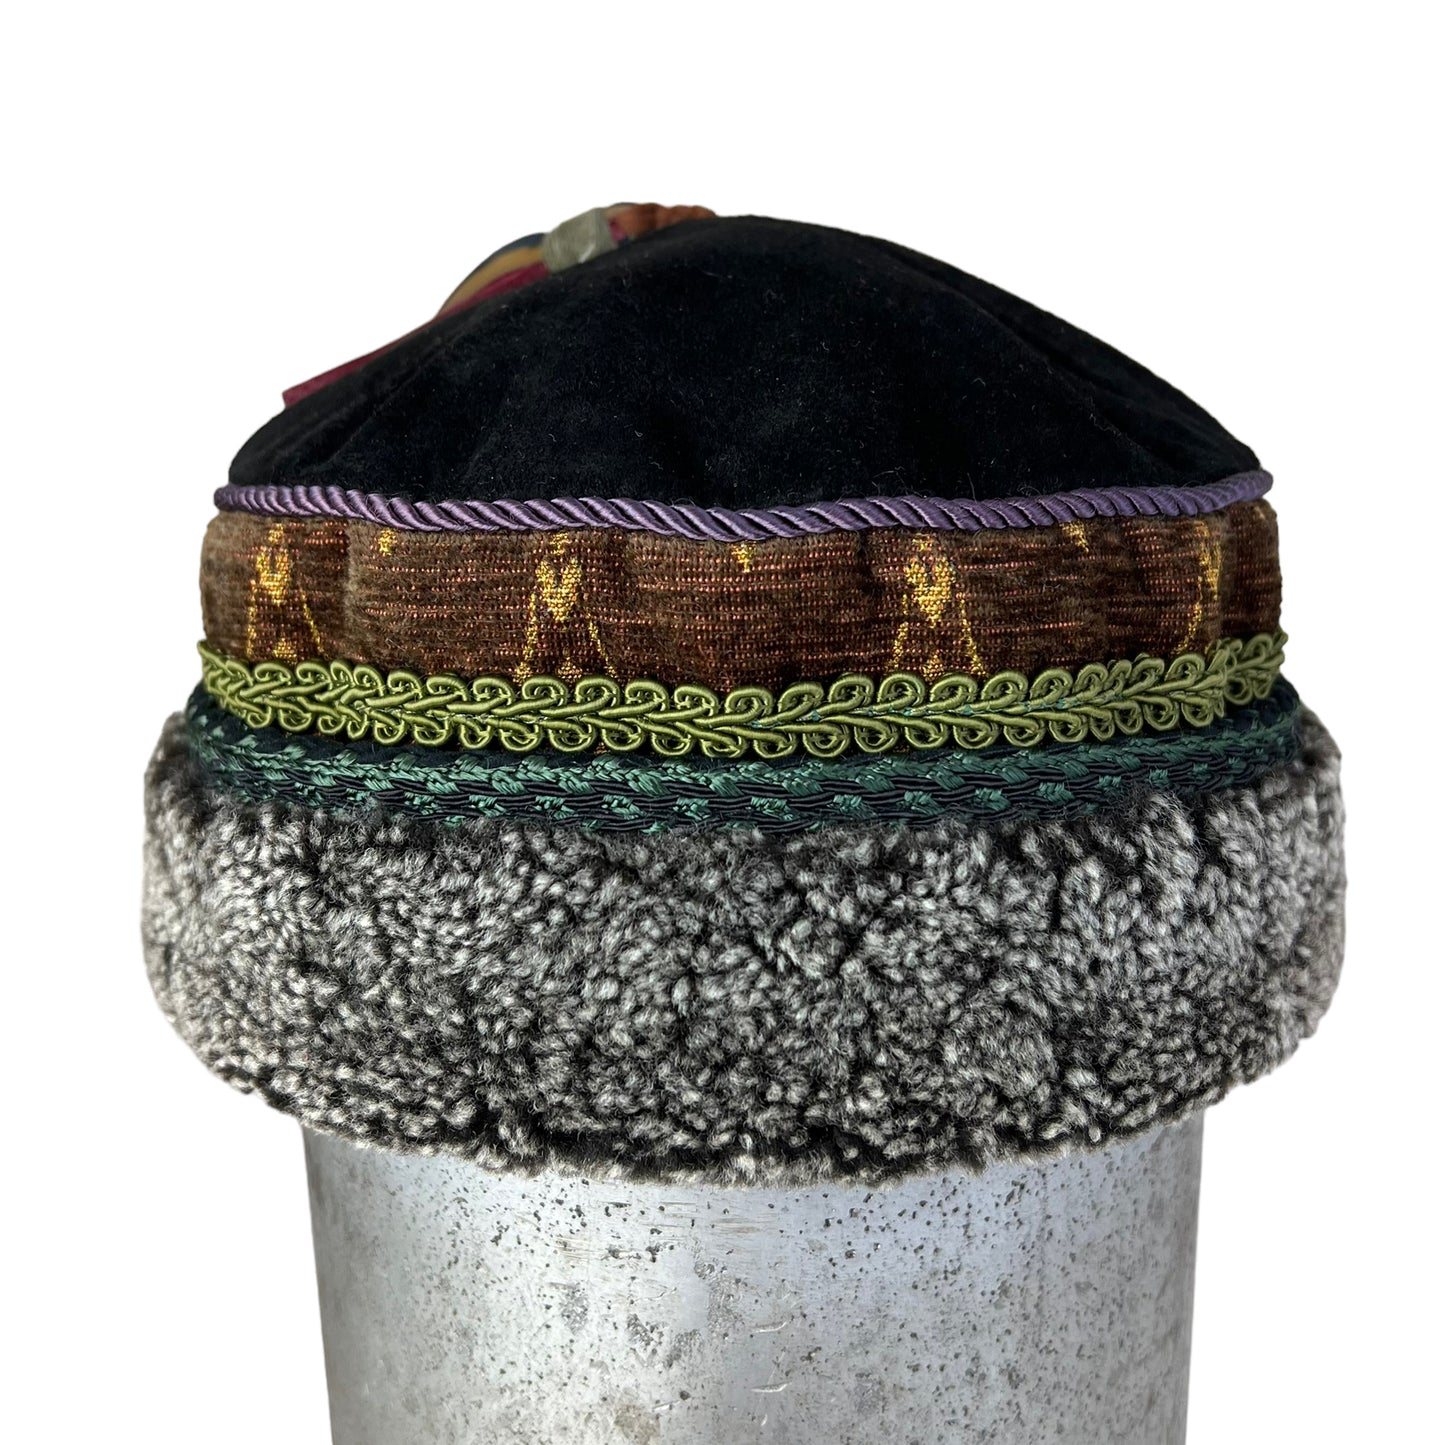 Tibetan Pillbox Hat X Small Brown Gold